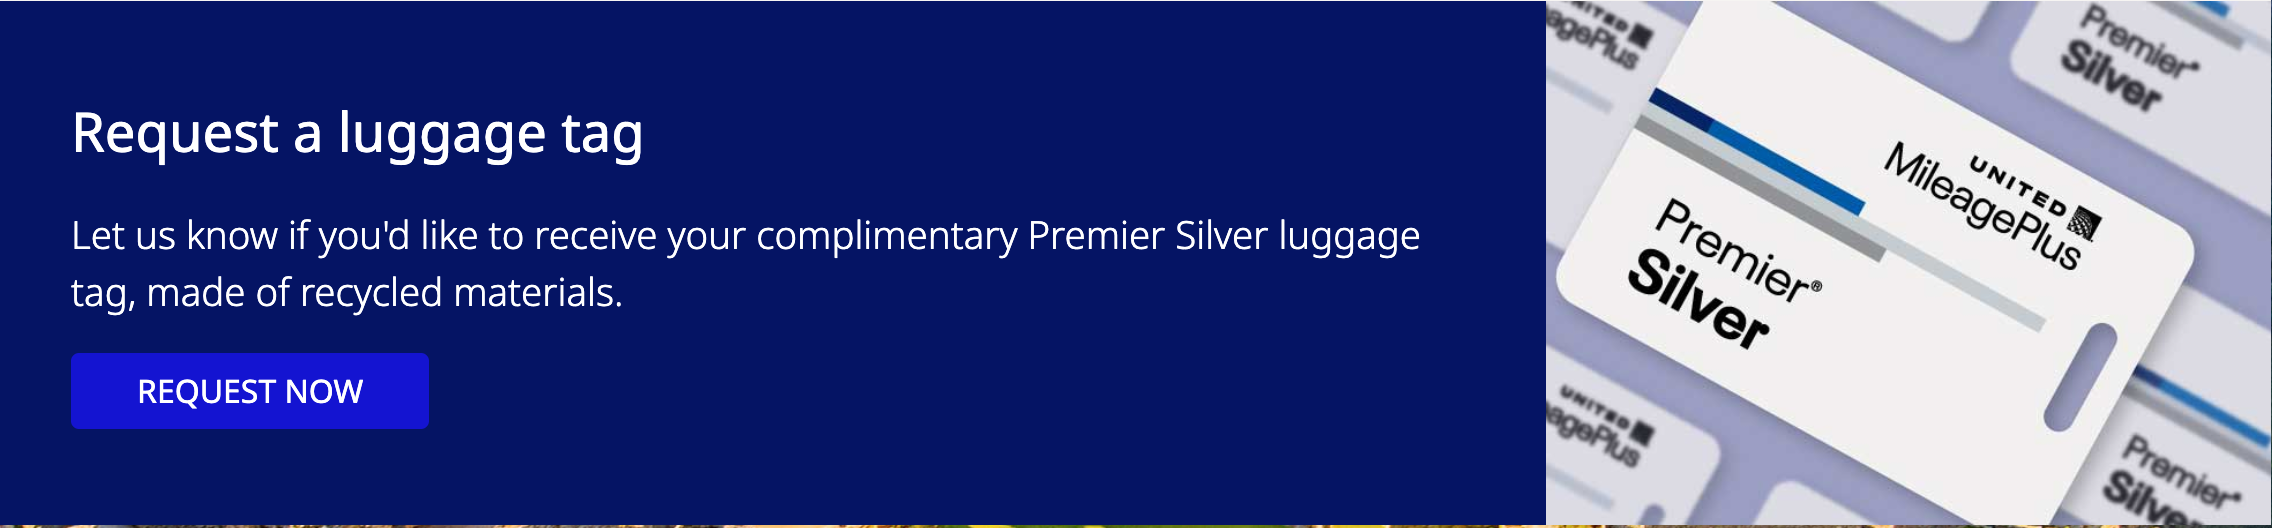 Premier Silver luggage tag